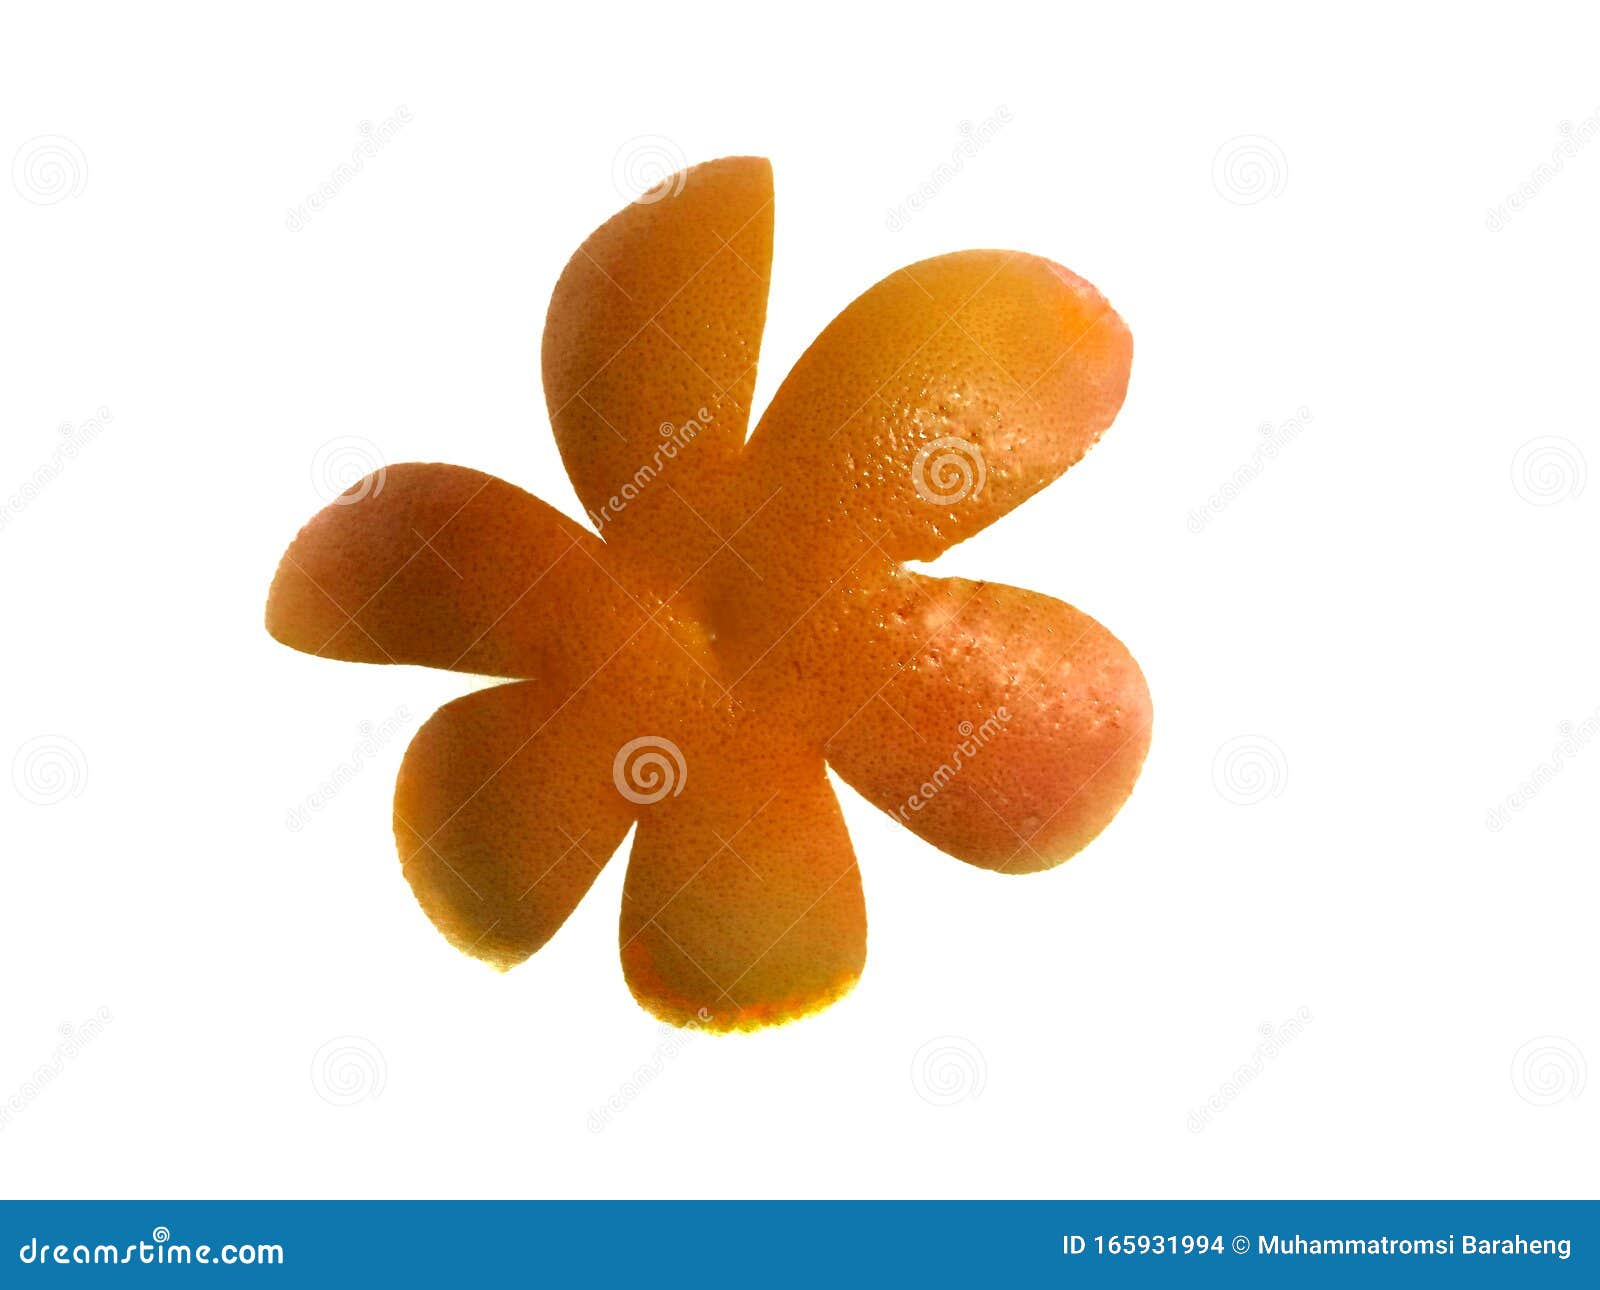 Skin Of Orange Isolated On White Background Stock Photo Image Of